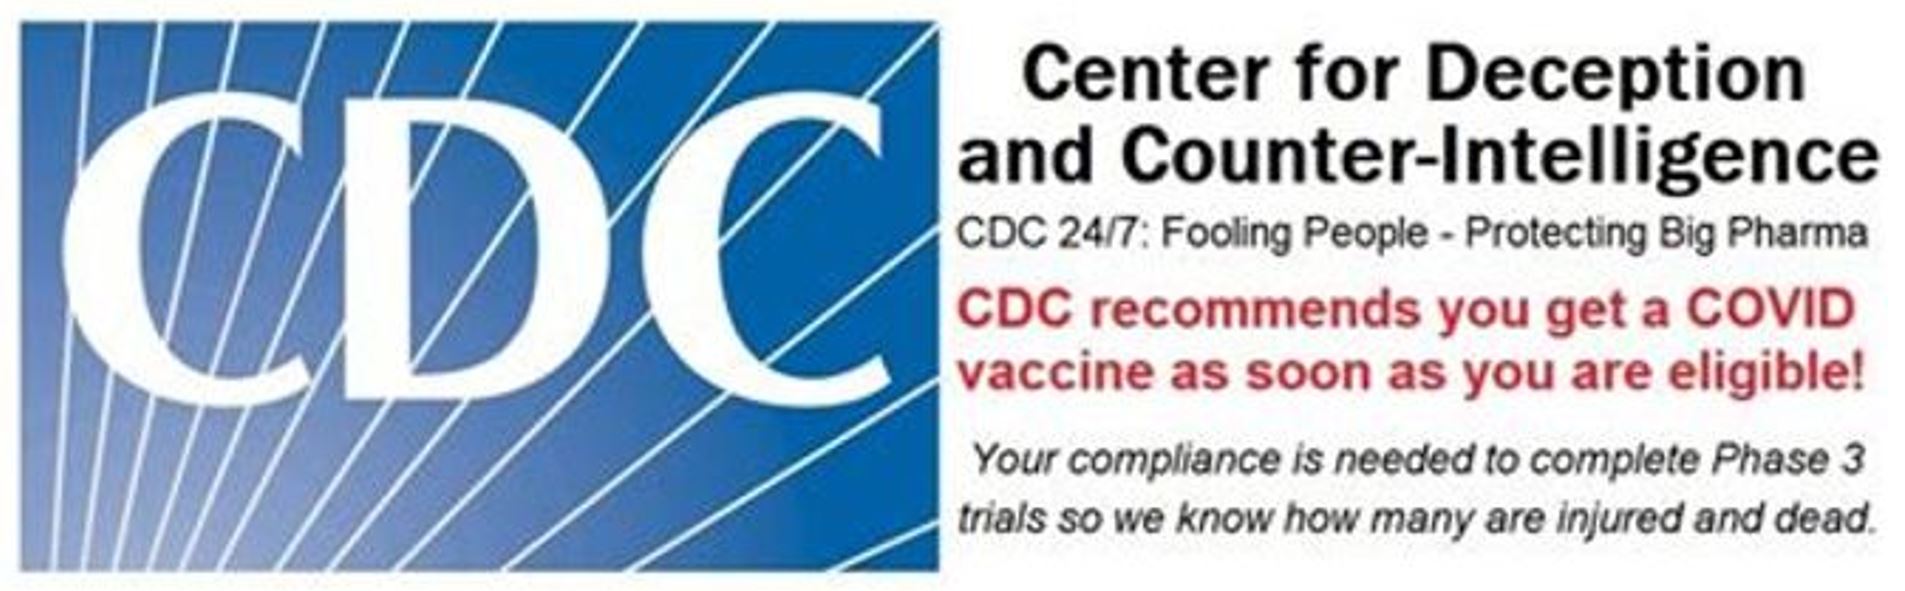 CDCCenterForDeception